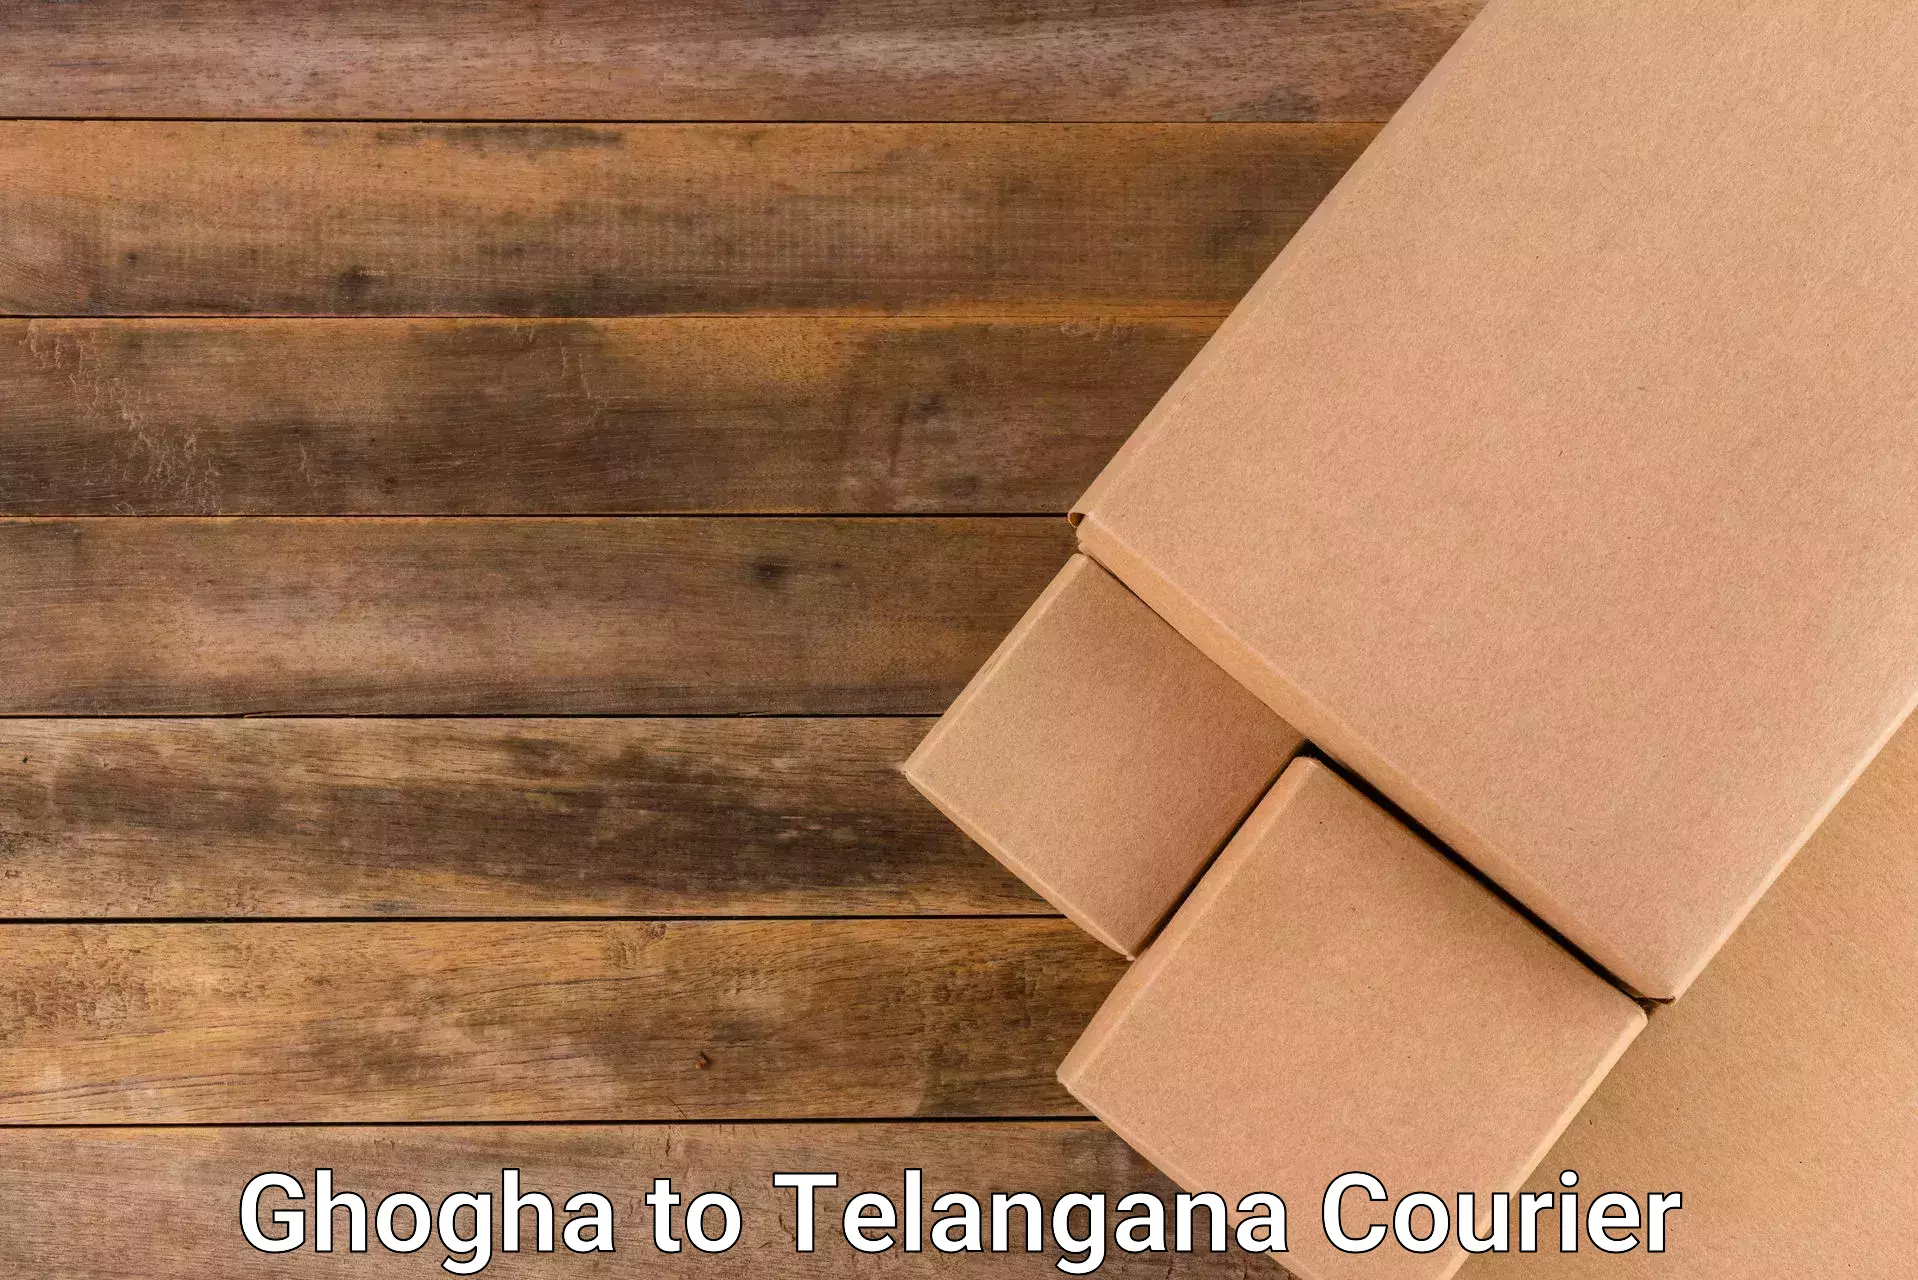 Global logistics network Ghogha to Telangana